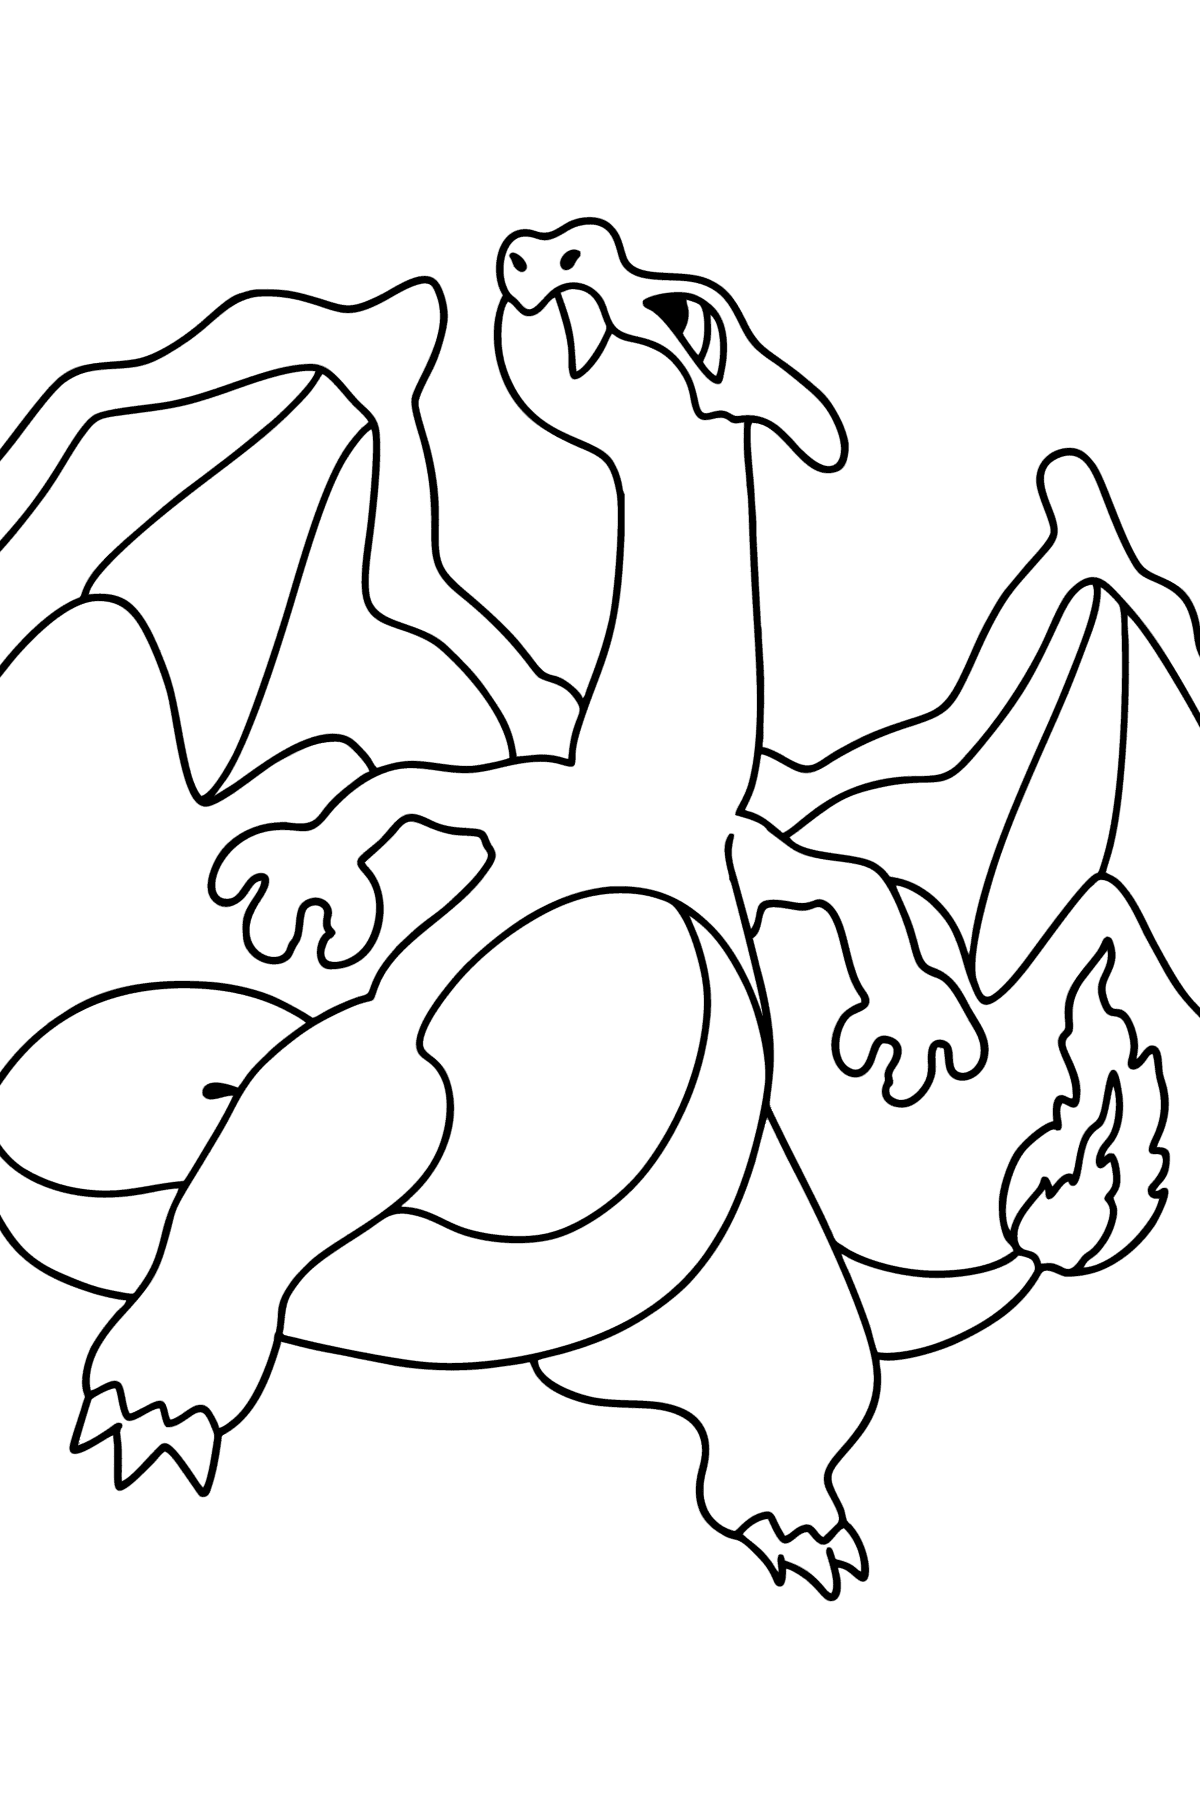 Tegning til fargelegging Pokémon Go Charizard - Tegninger til fargelegging for barn